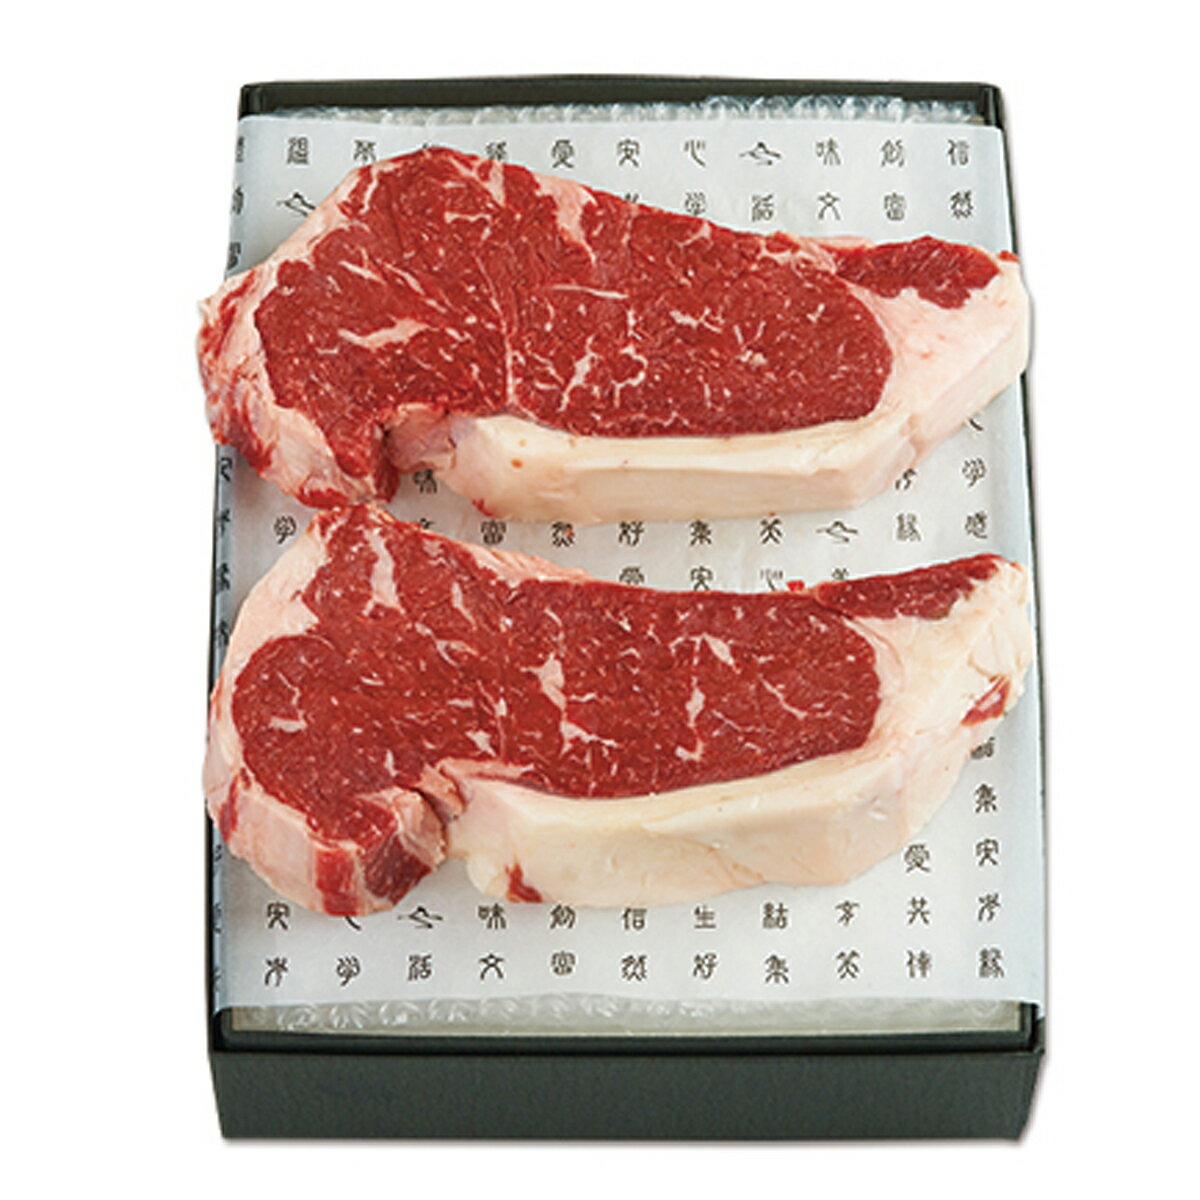 ドライエイジングビーフ サーロインステーキ 2枚 400g 熟成肉 国産 牛肉 熟成ステーキ お祝い グルメ 株式会社さの萬 静岡県